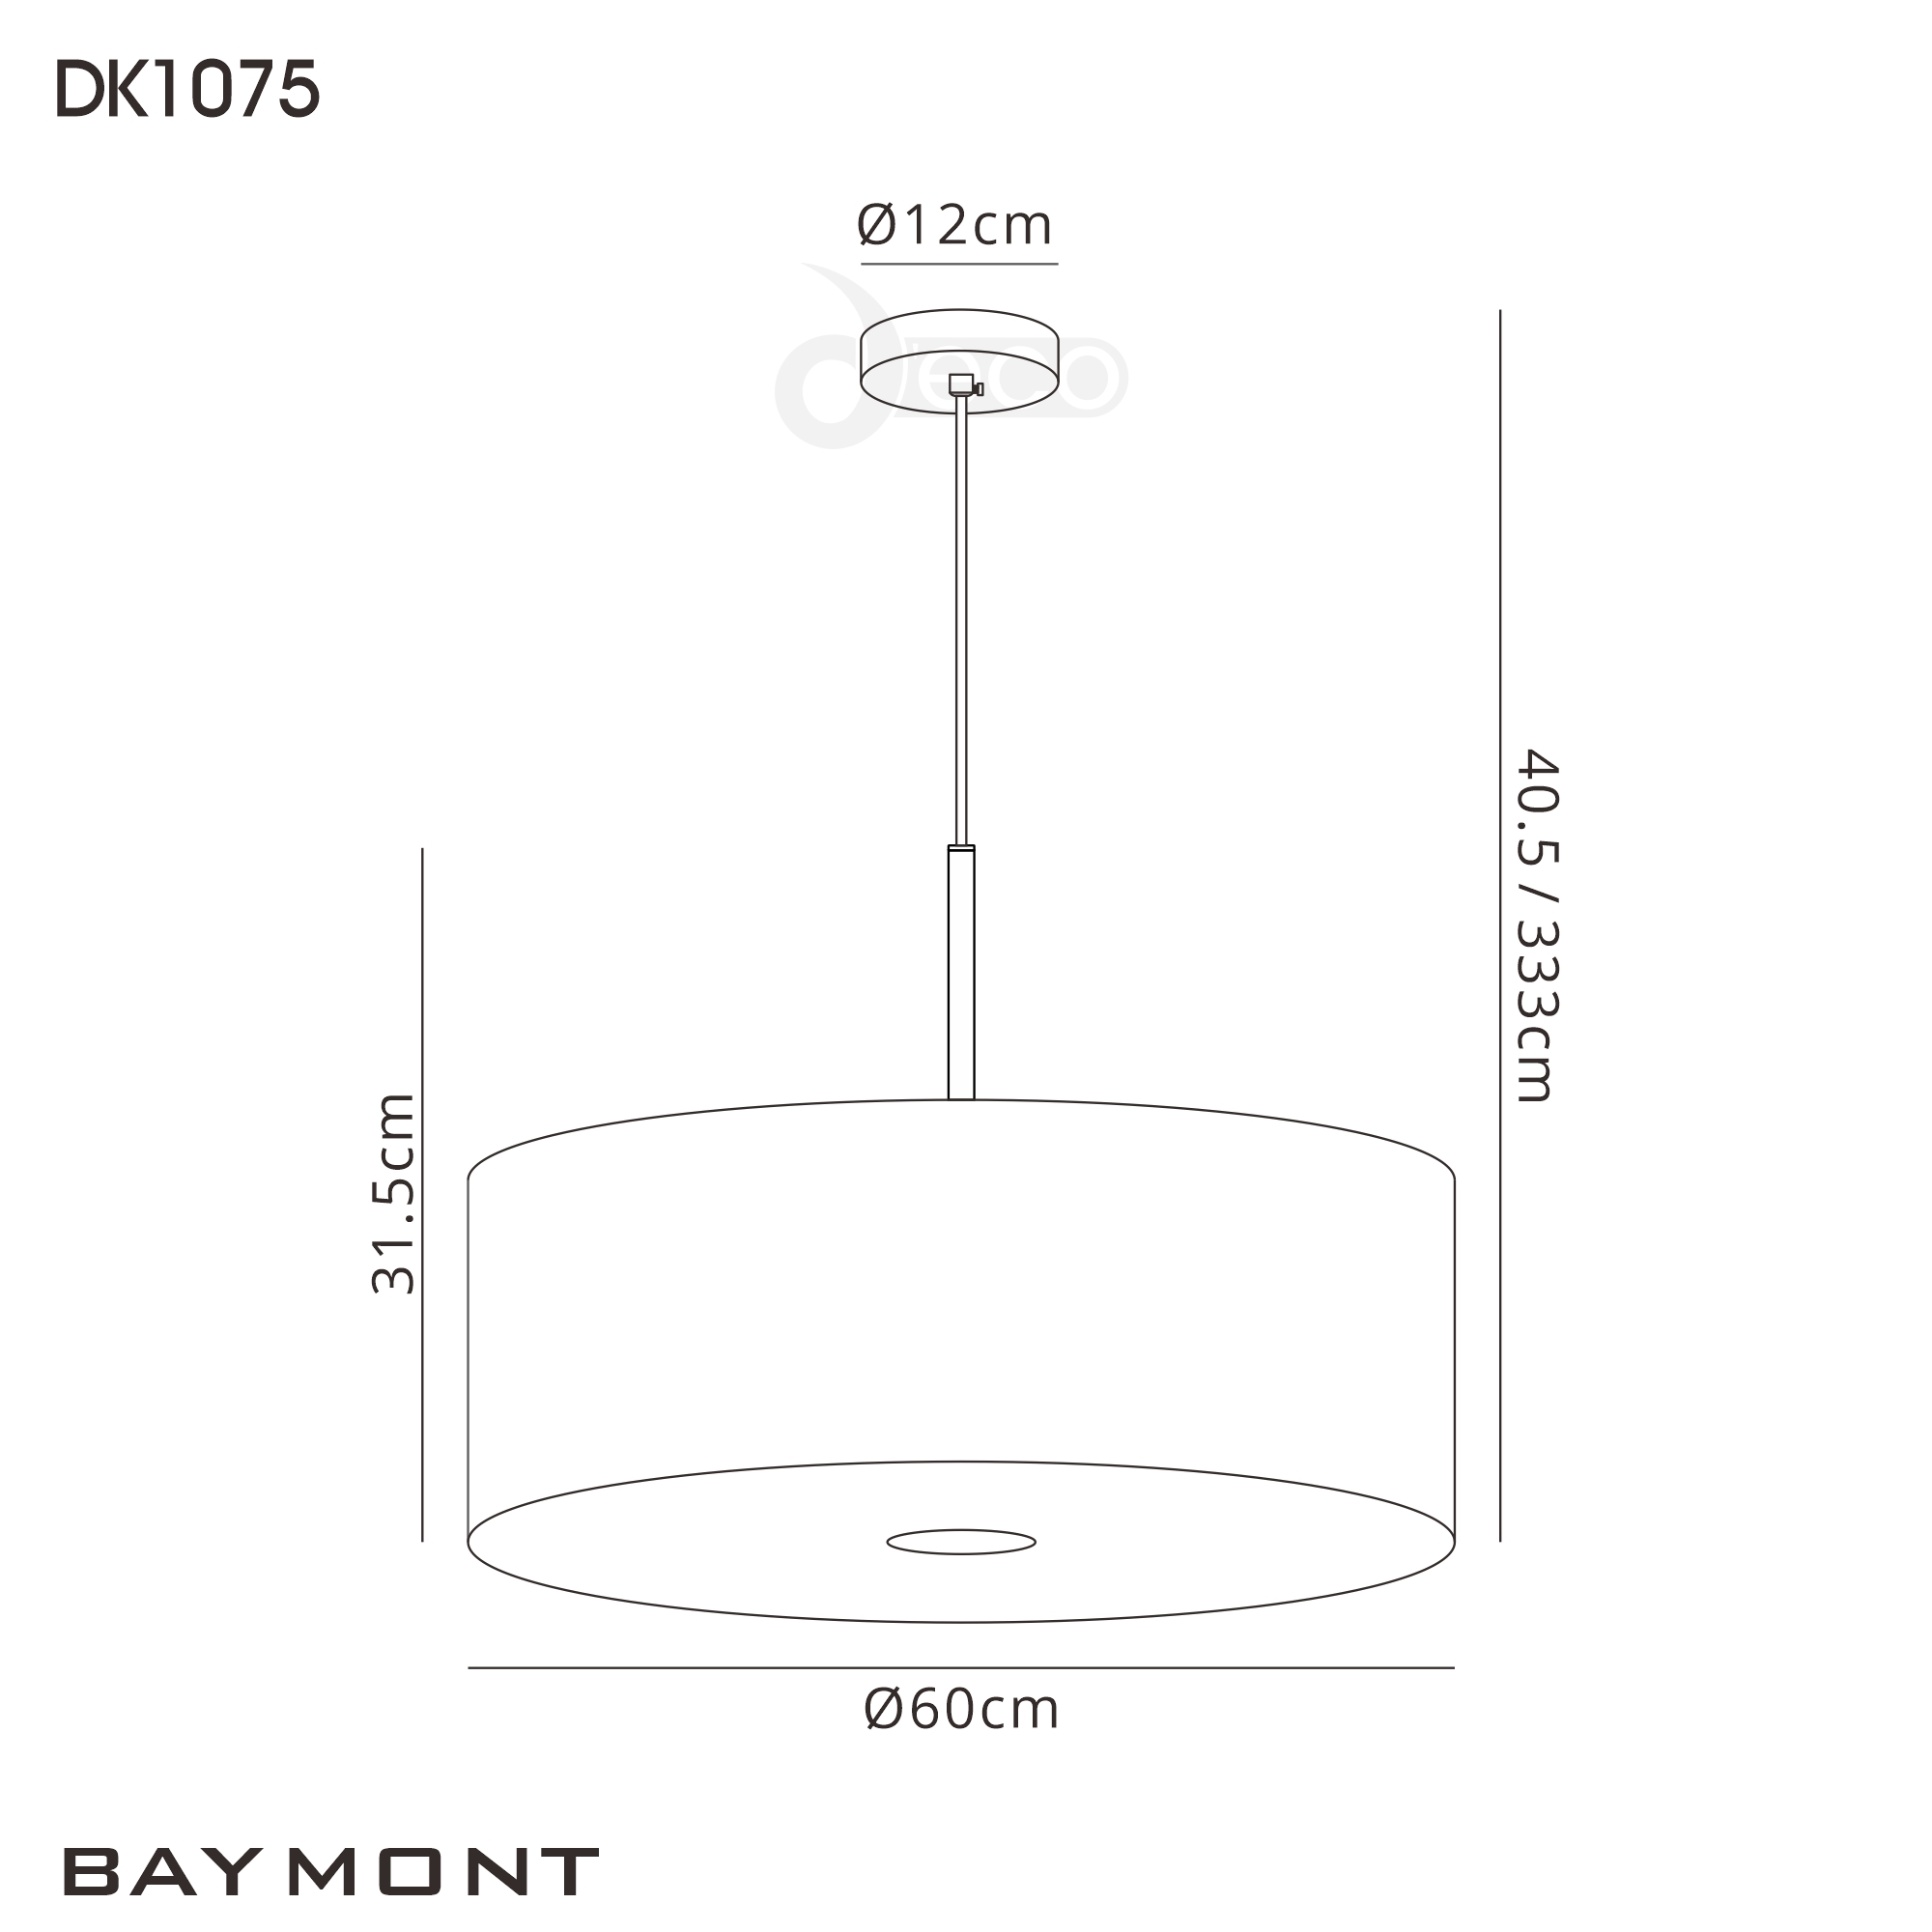 DK1075  Baymont 60cm 5 Light Pendant Satin Black, Grey/White, Frosted/Black Detail Diffuser